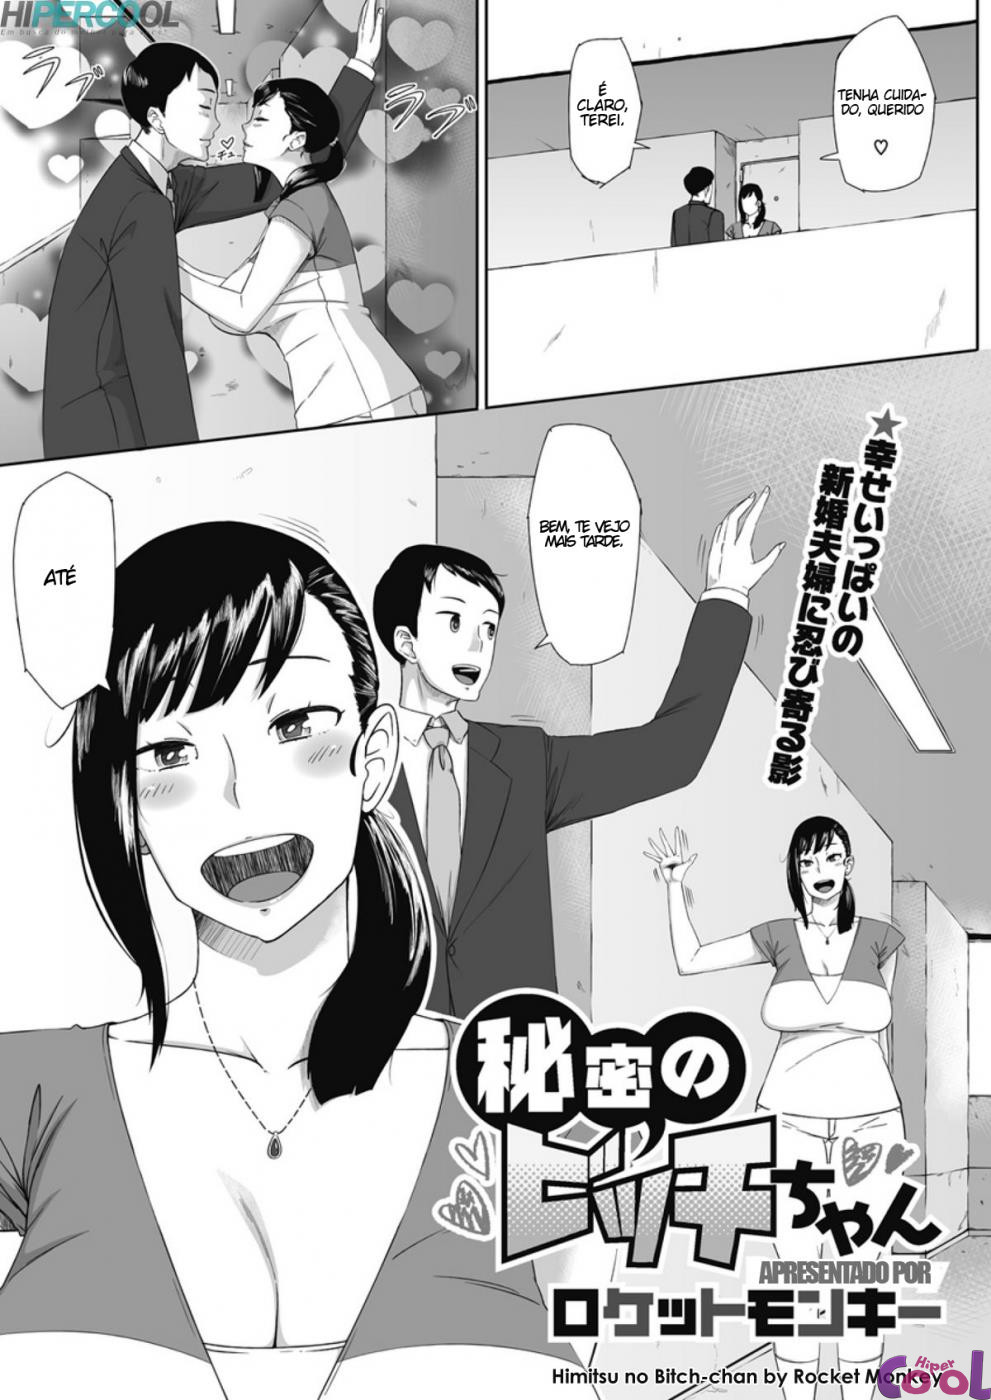 himitsu-no-bitch-chan-chapter-01-page-01.jpg